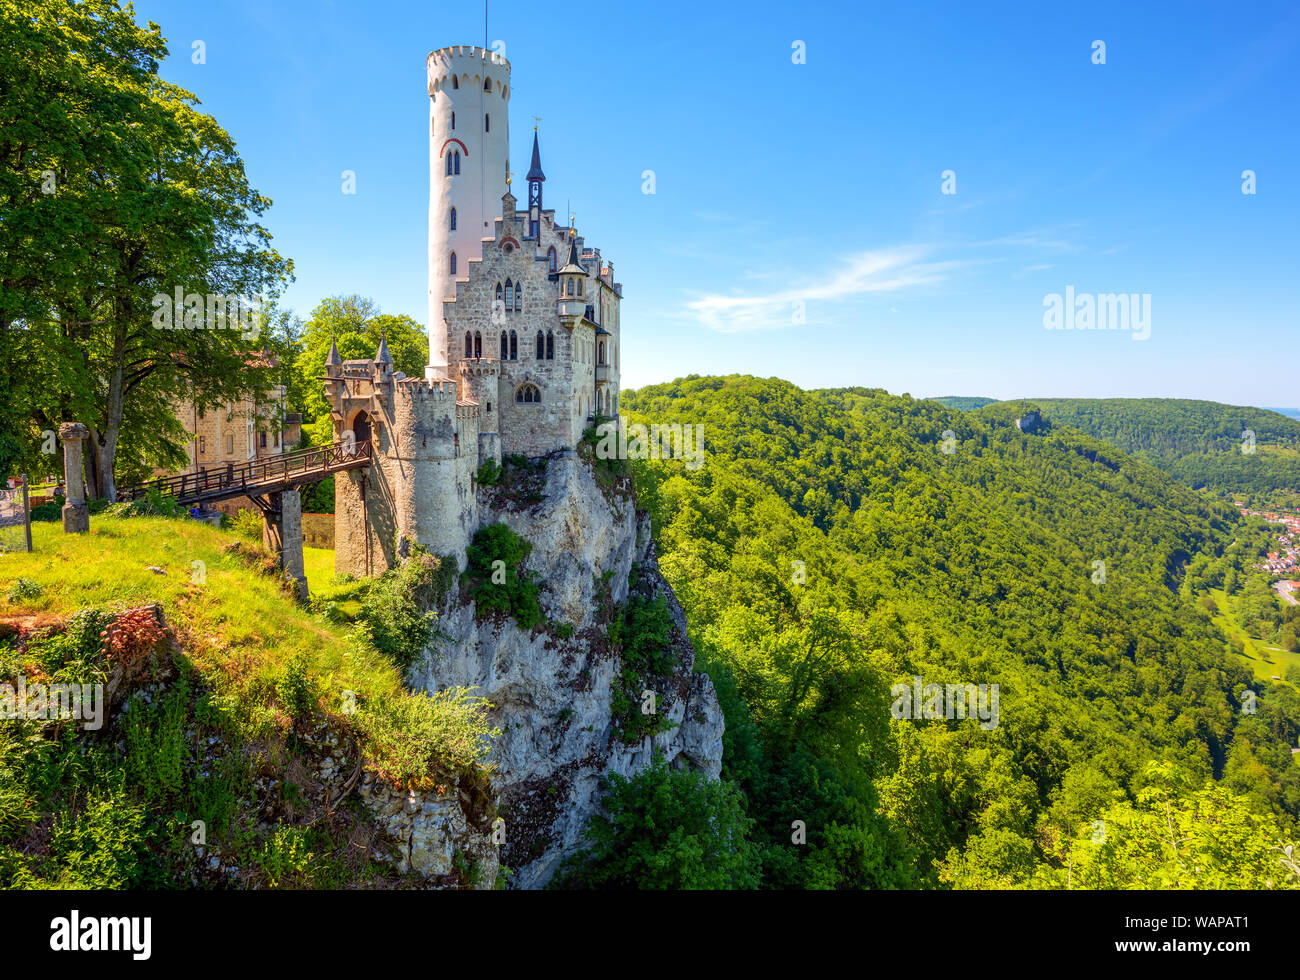 Château de Lichtenstein en Forêt Noire, en Allemagne, construit en style gothique romantique et connu comme un château de conte de fées de Wurtemberg, est l'un des plus beaut Banque D'Images